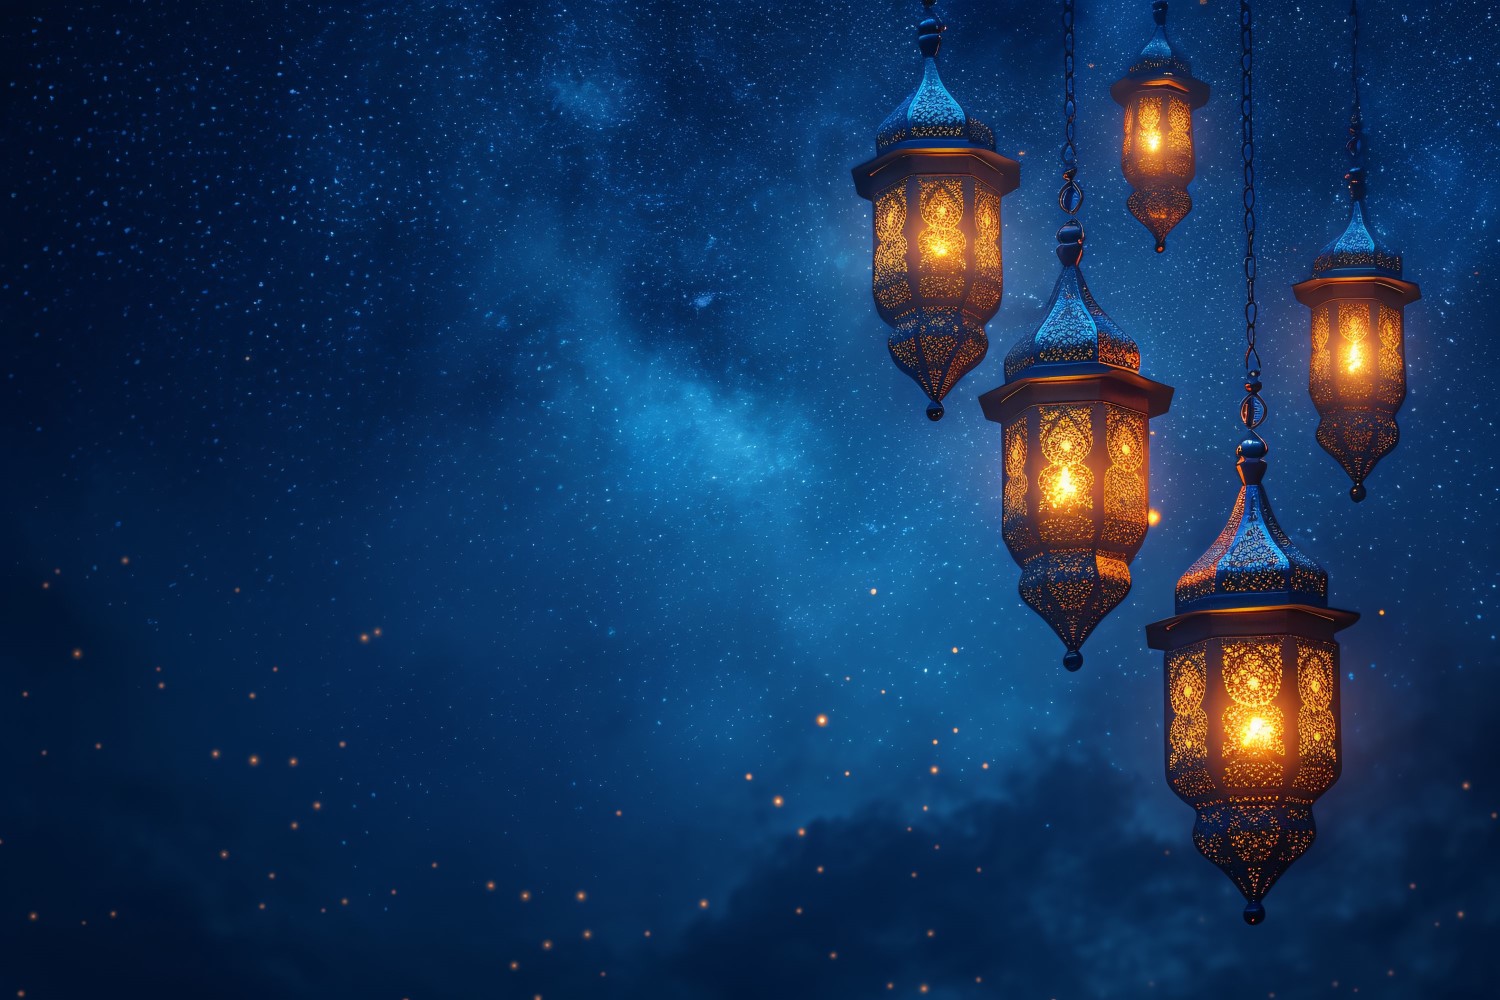 Ramadan Kareem greeting card banner poster design with lantern & galaxy background